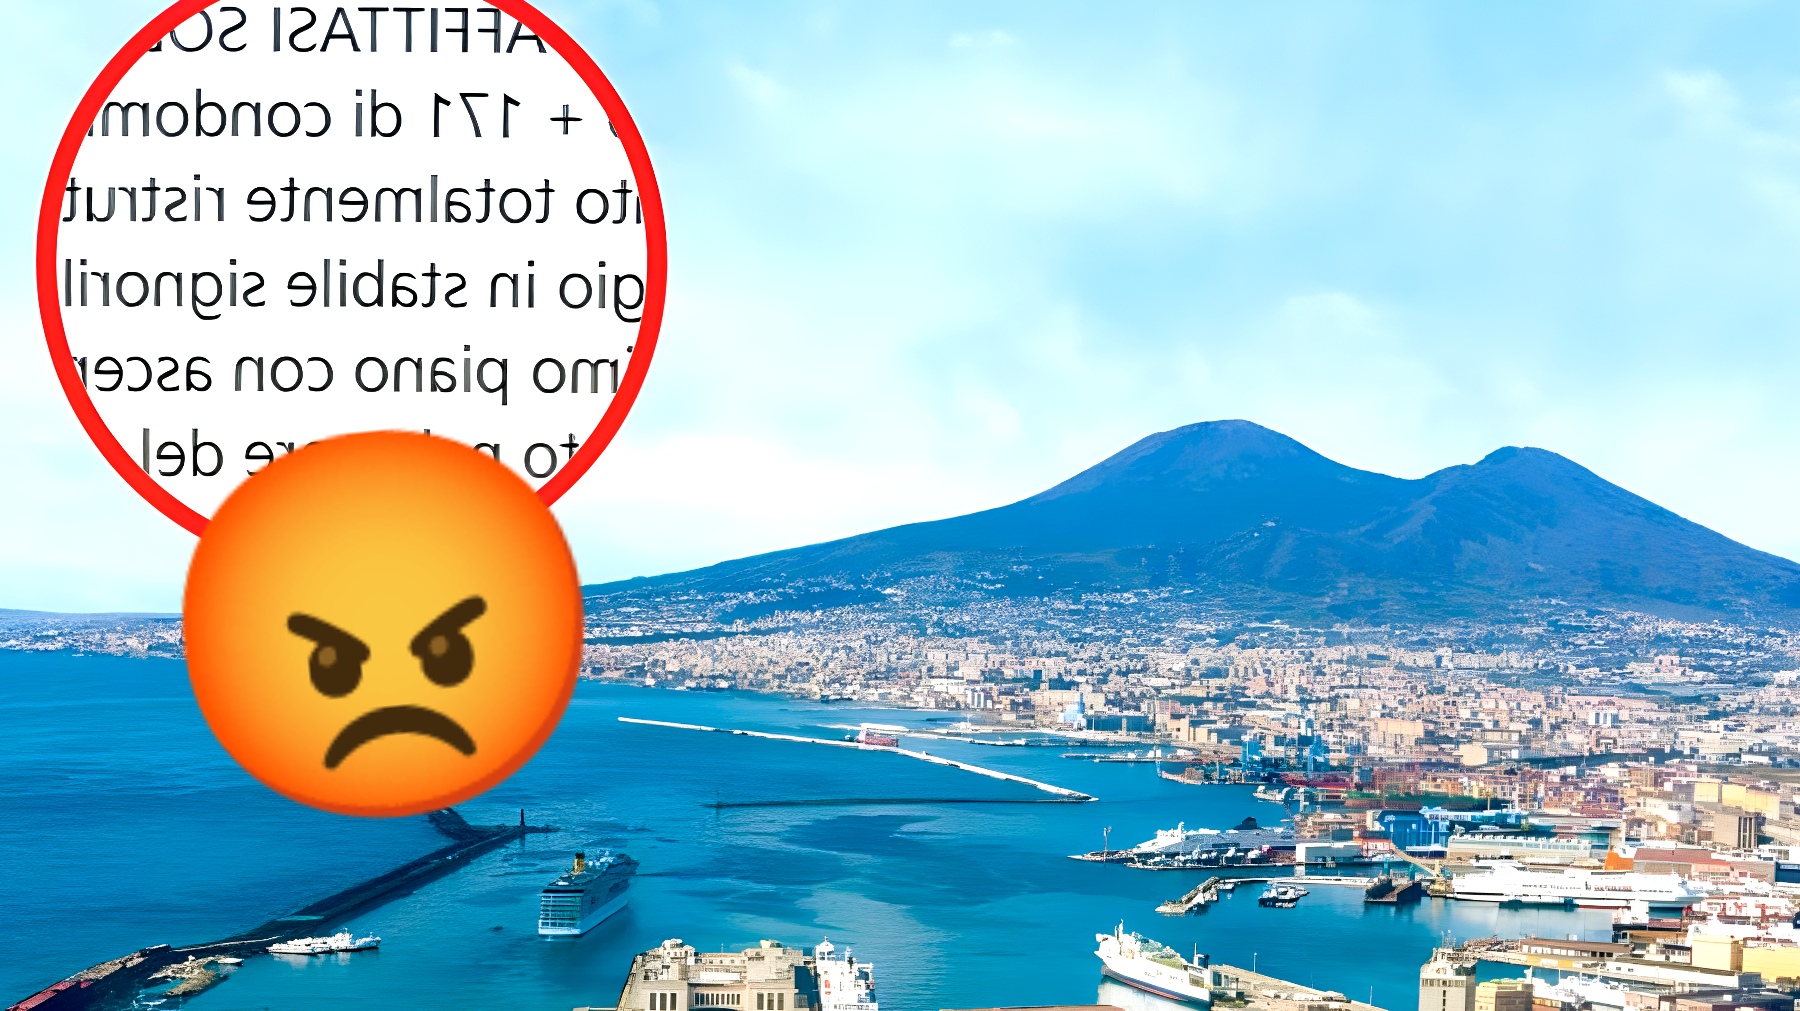 Affitti Napoli, il prezzo dell'appartamento nella zona più esclusiva è fuori controllo: "Gli impiegati non possono permetterselo"